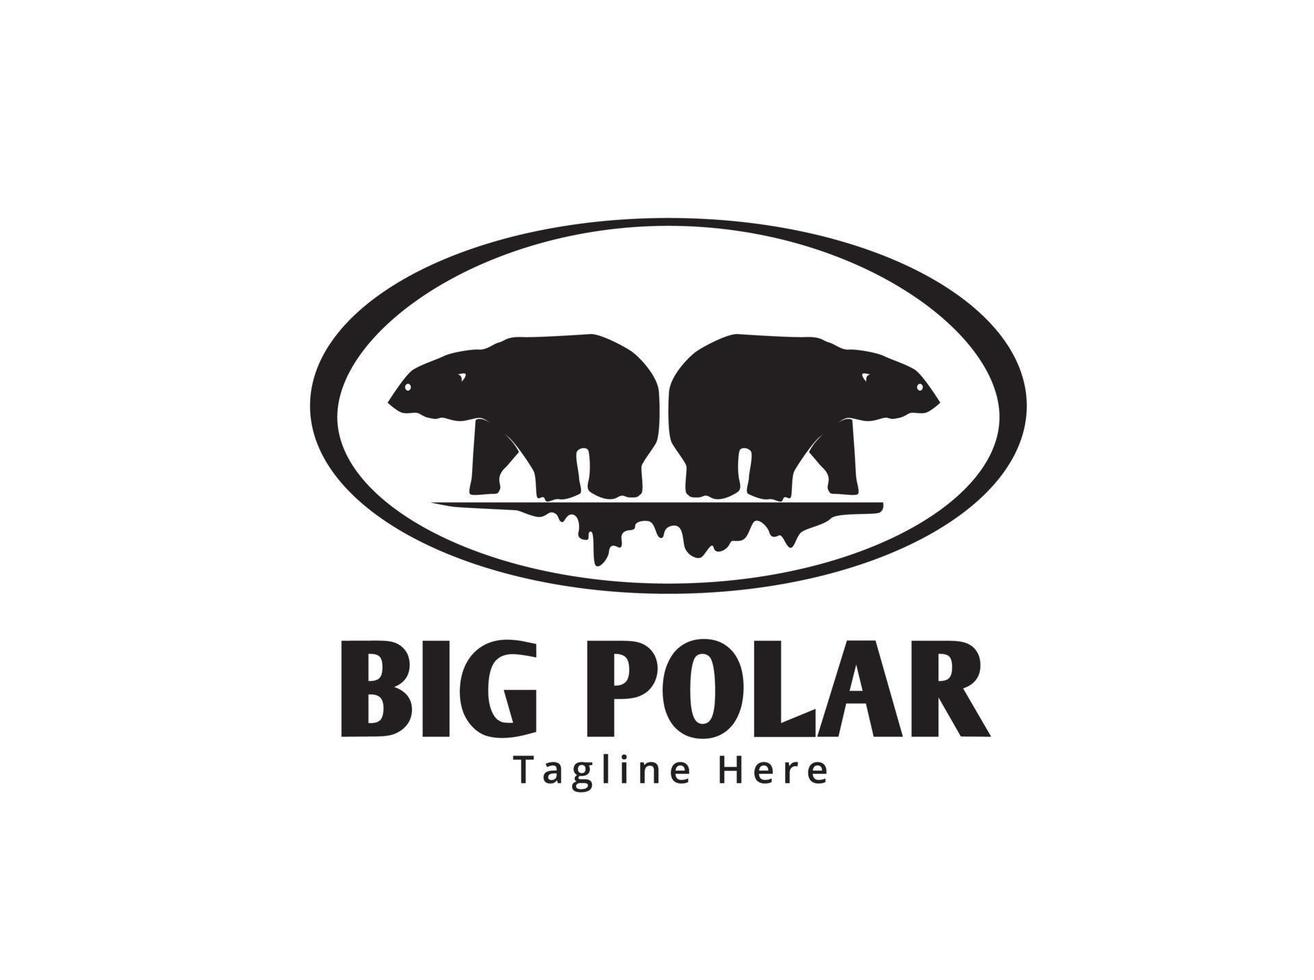 grande logotipo do urso polar vetor